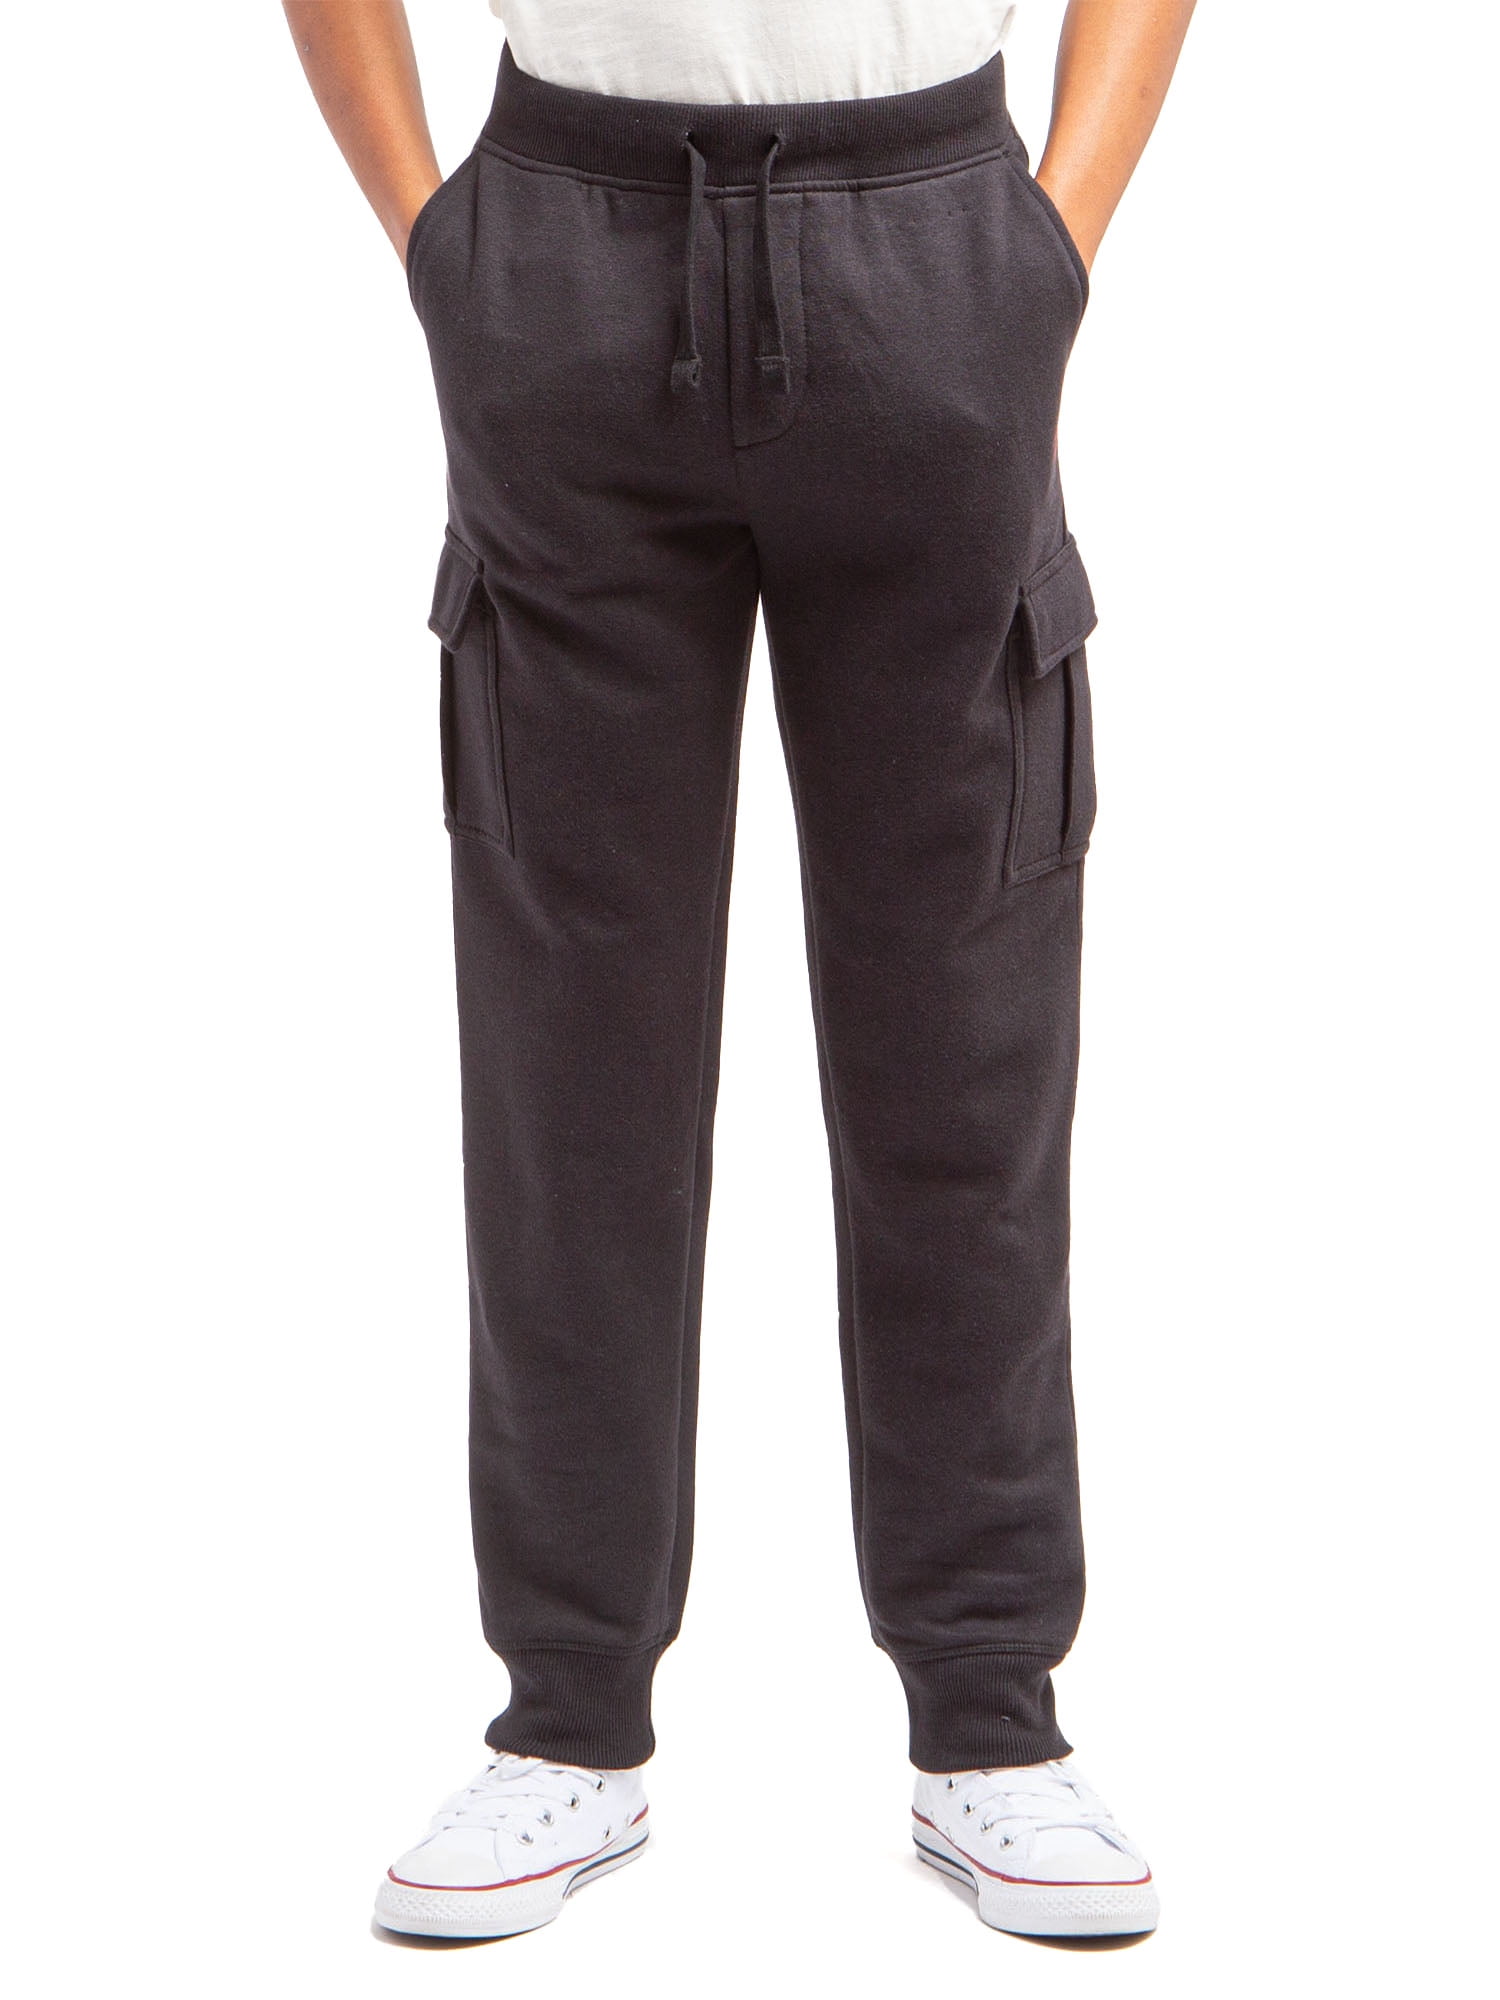 U.S. Polo Assn. Boys Fleece Cargo Jogger Pants, Sizes 4-18 - Walmart.com